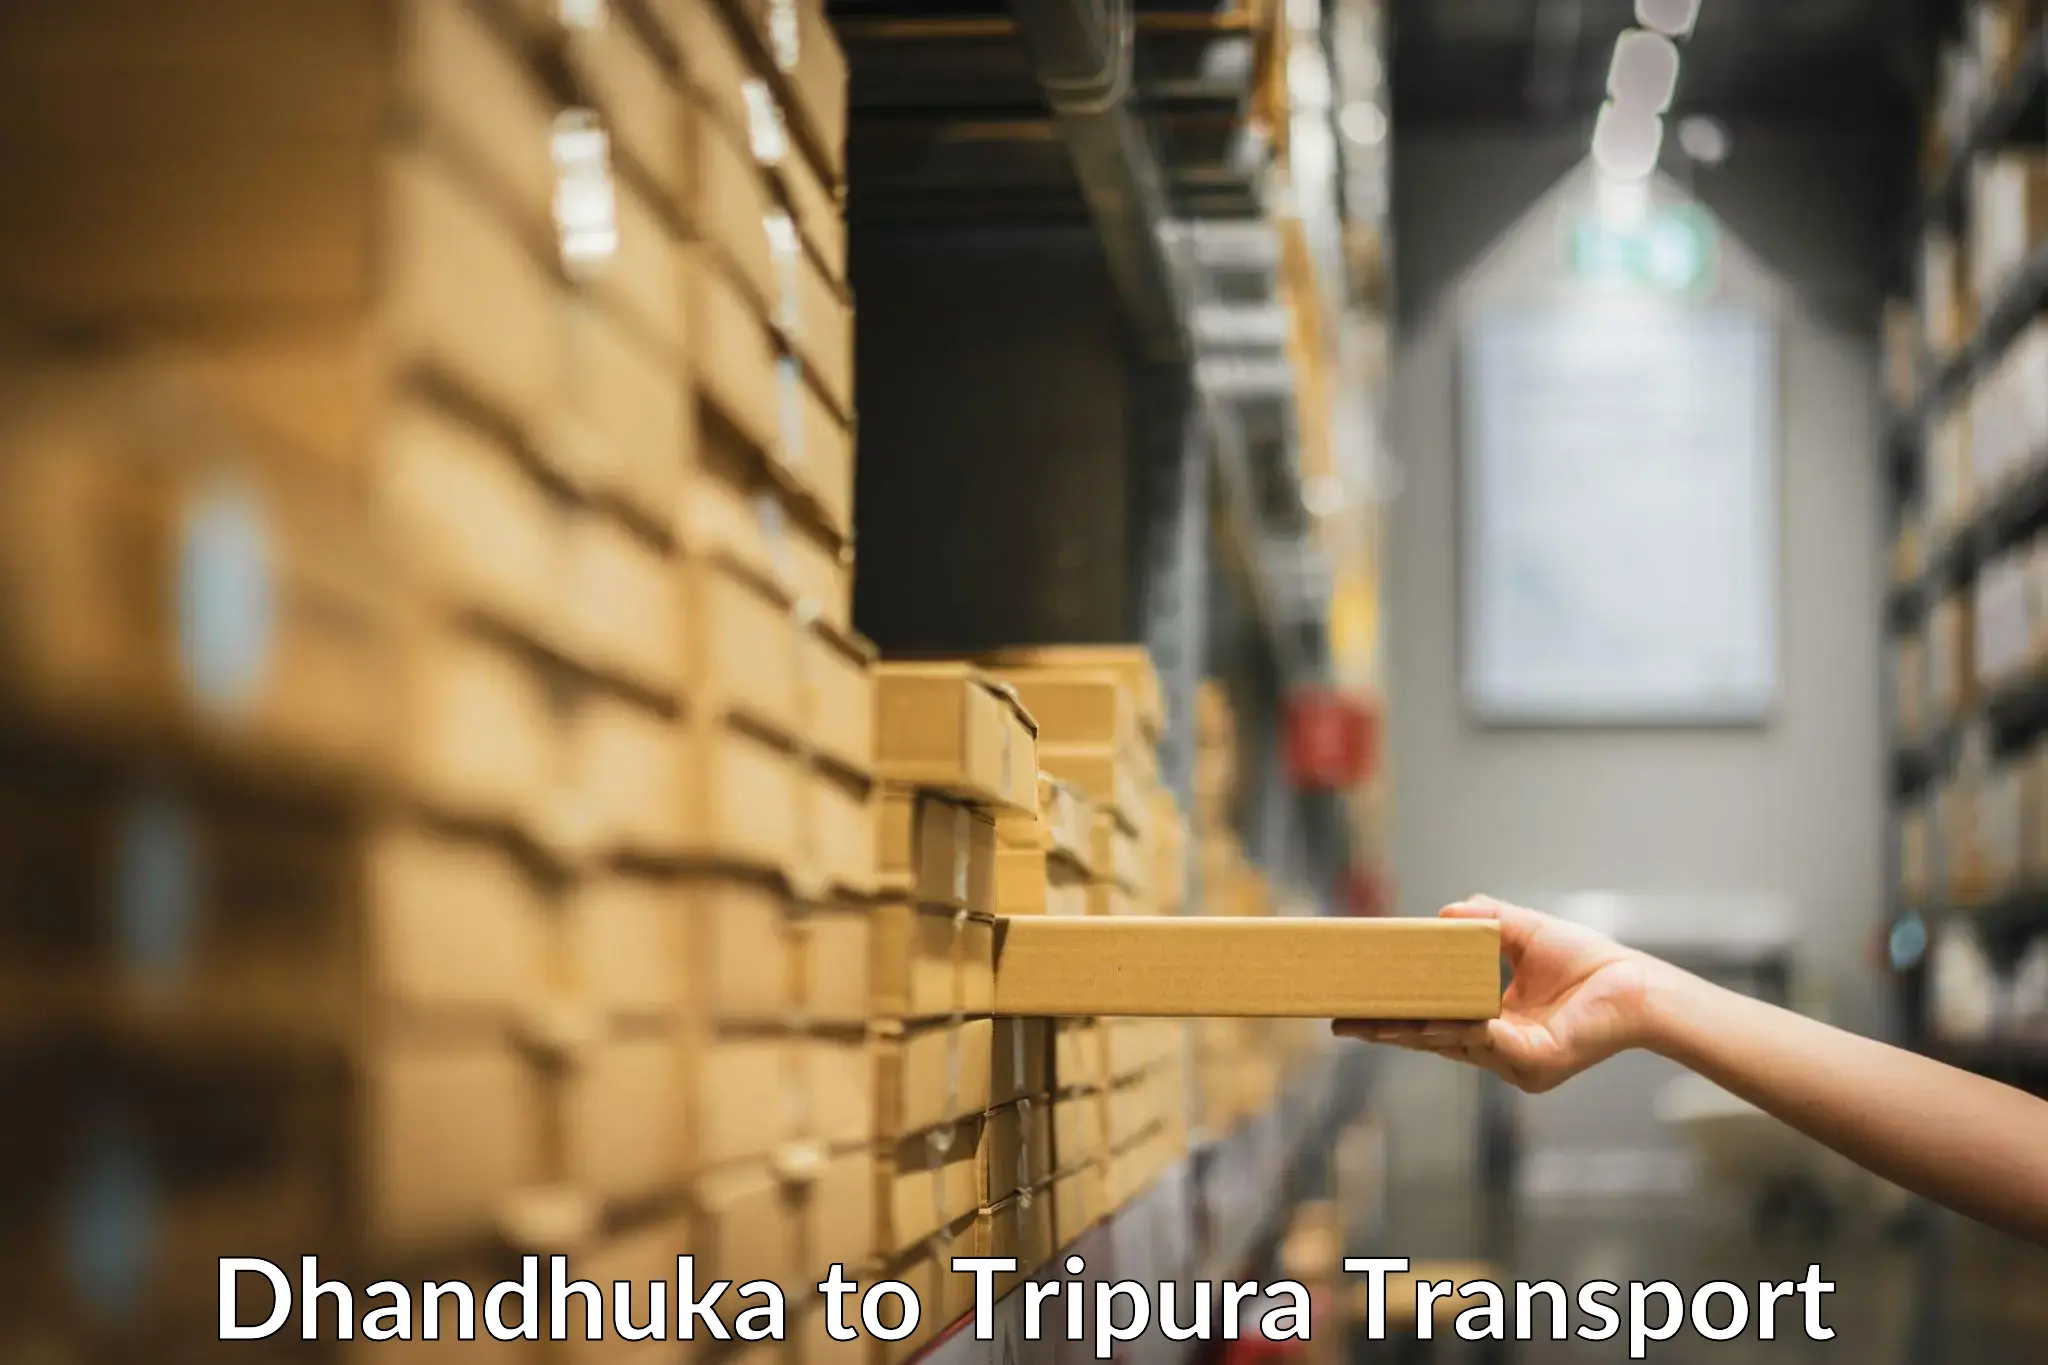 Furniture transport service Dhandhuka to Udaipur Tripura